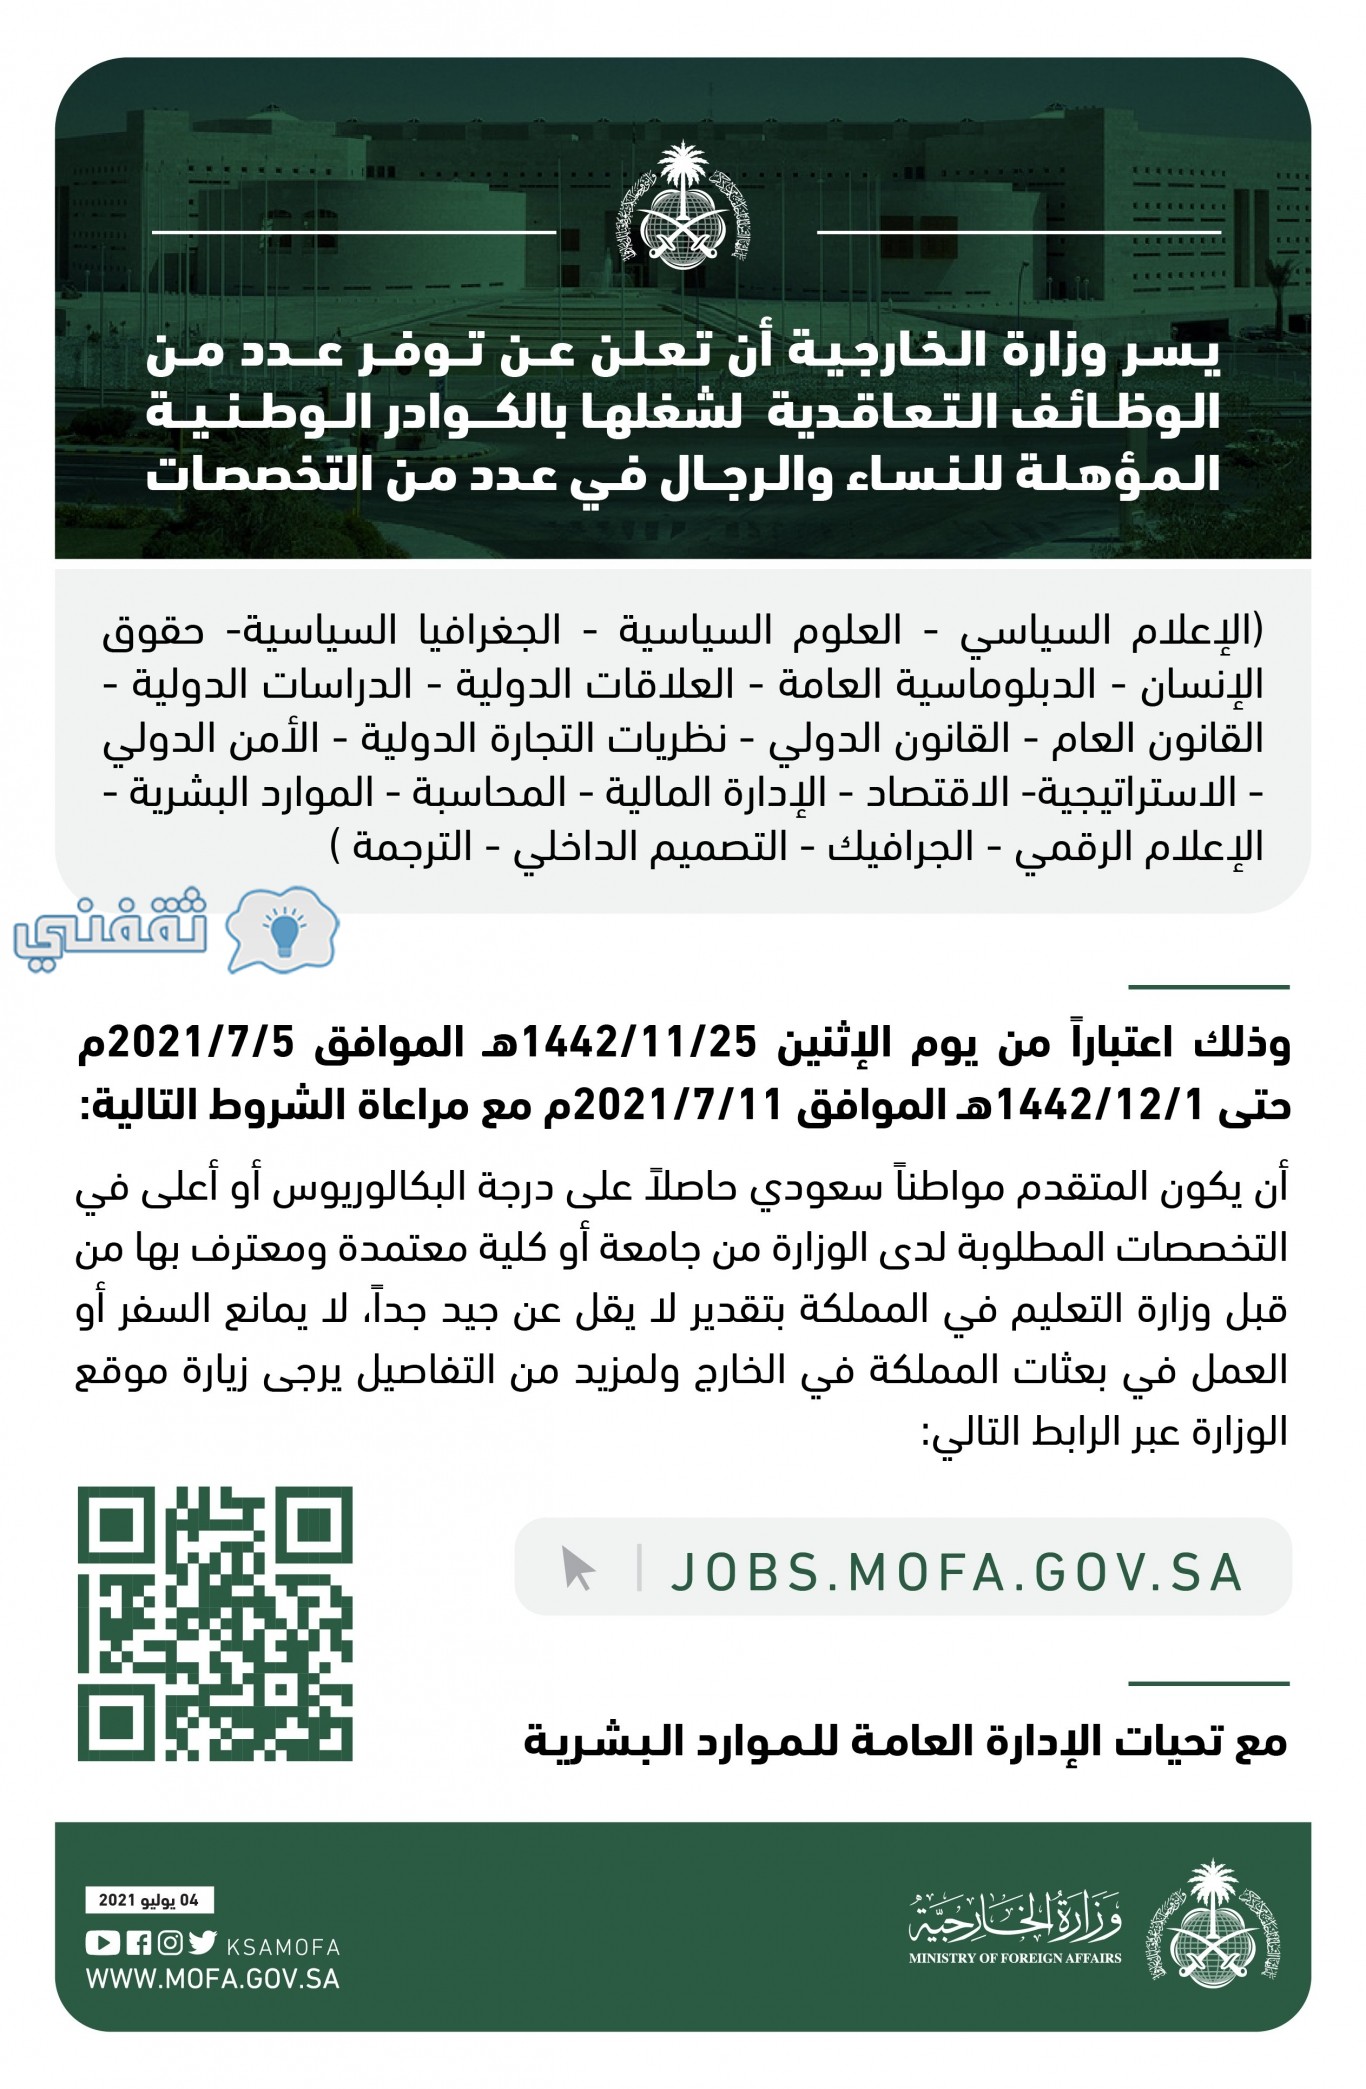 السعودية وظائف وظائف حكومية